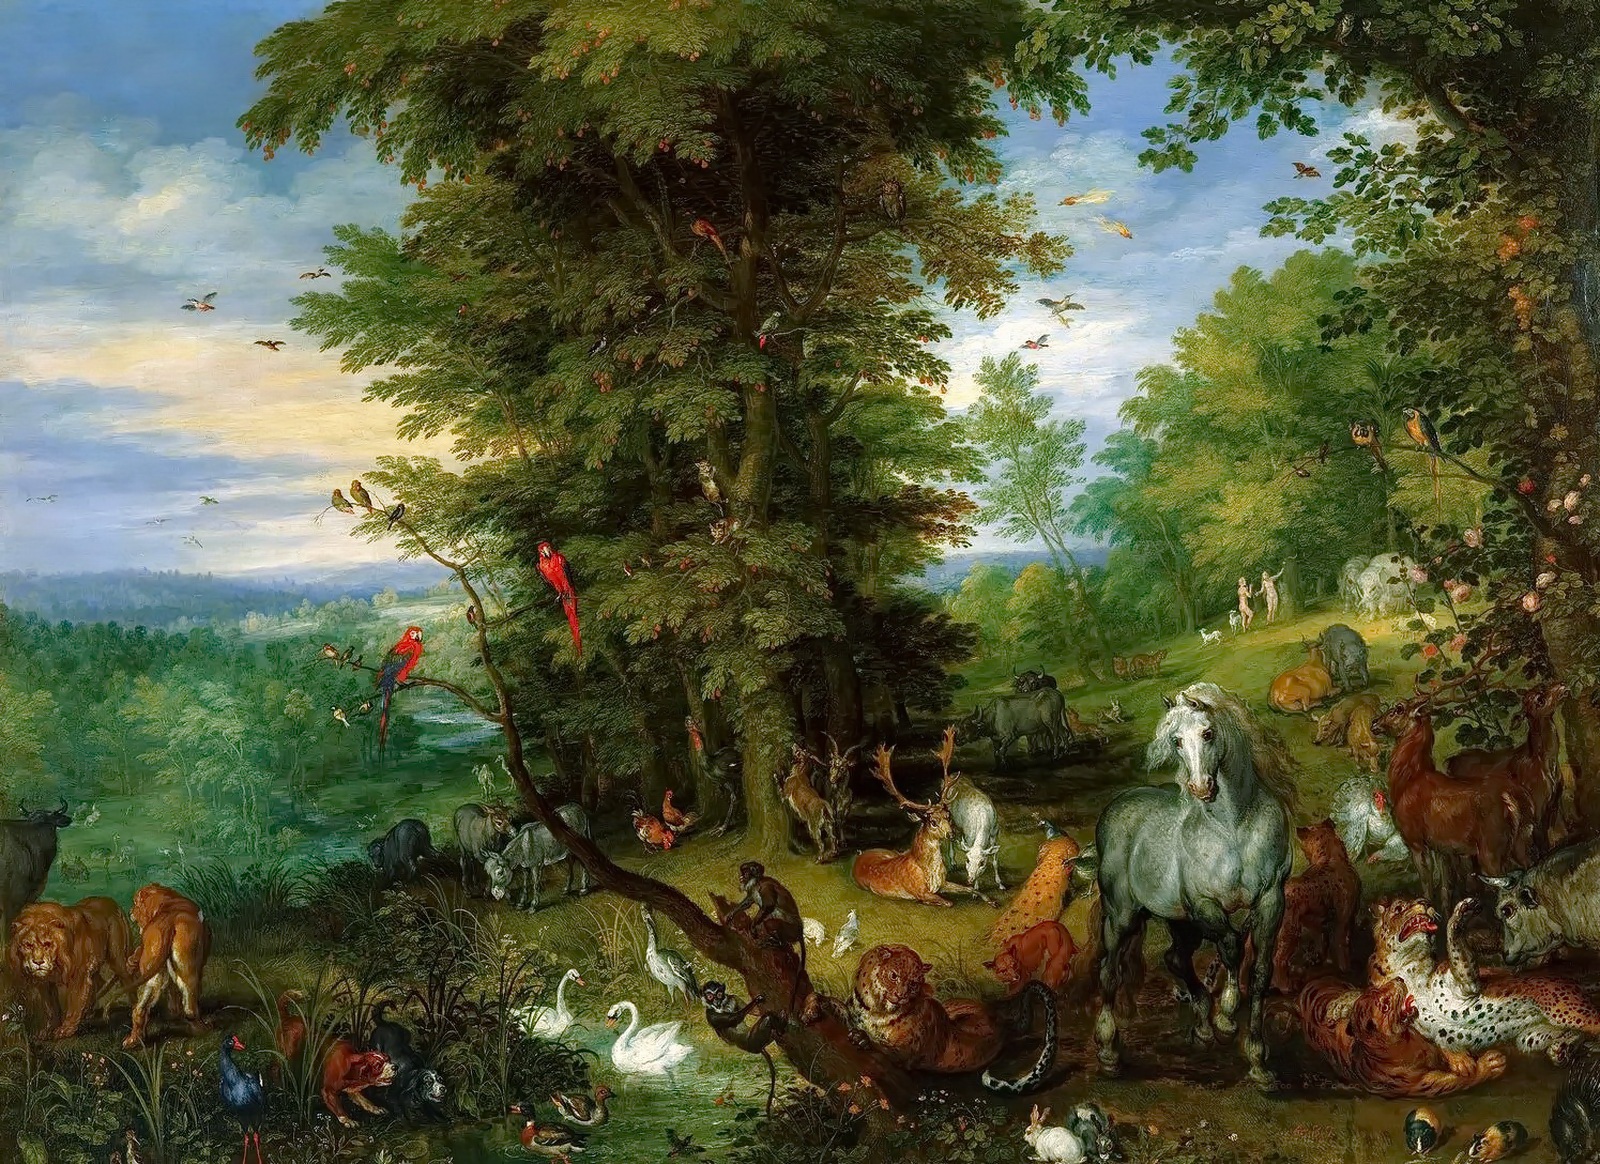 Ян Брейгель Старший. Адам и Ева в Эдемском саду. 1615.